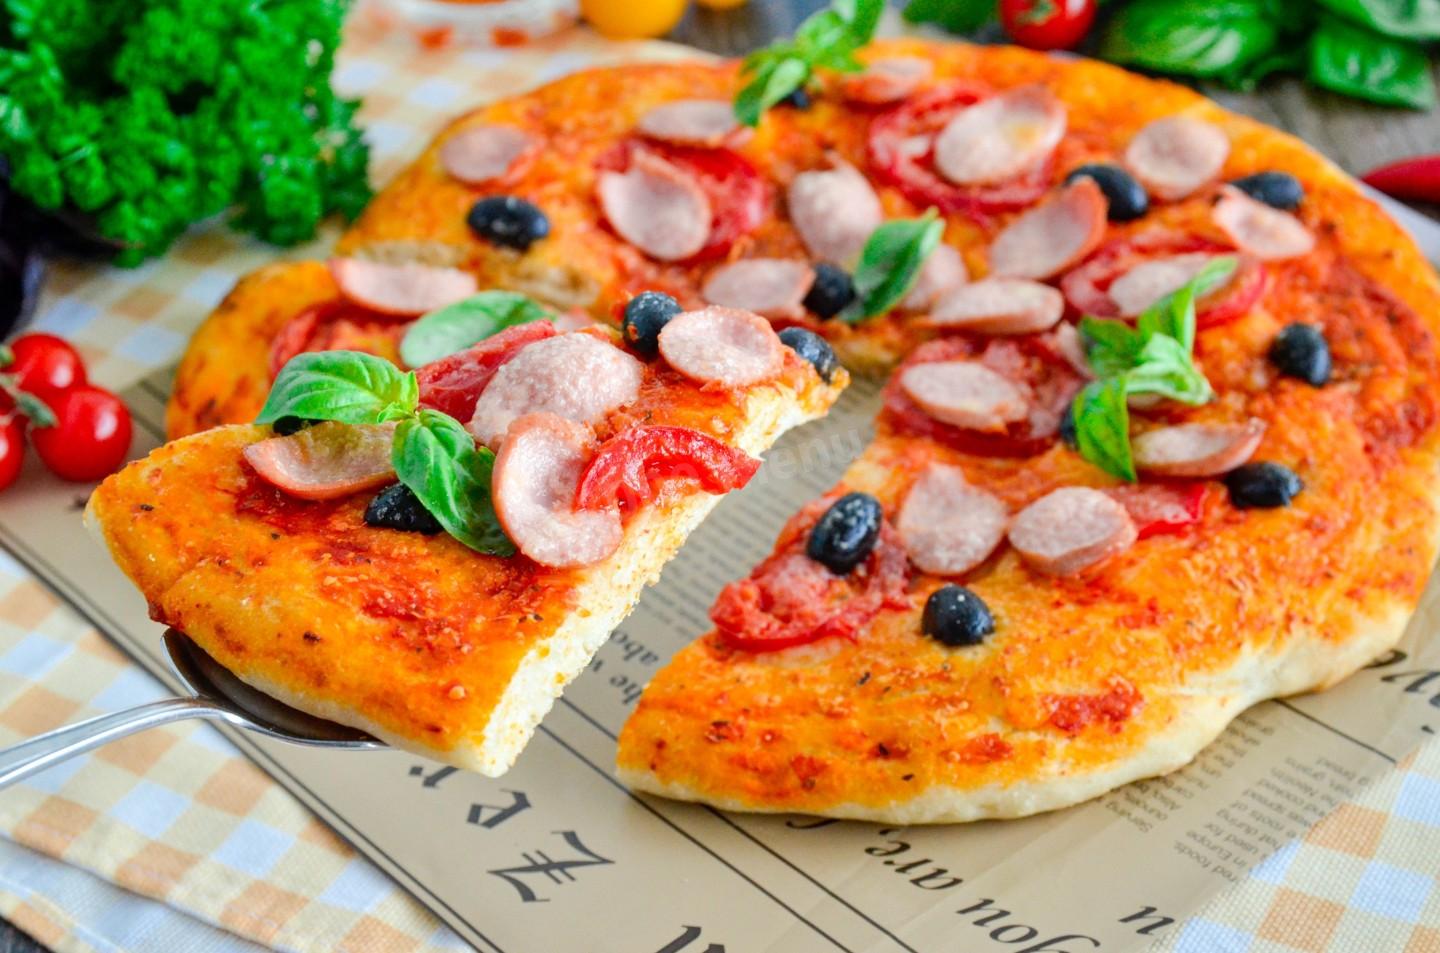 я хочу пиццу песто с пепперони и сосисками так же хочу другую с оливками фото 117